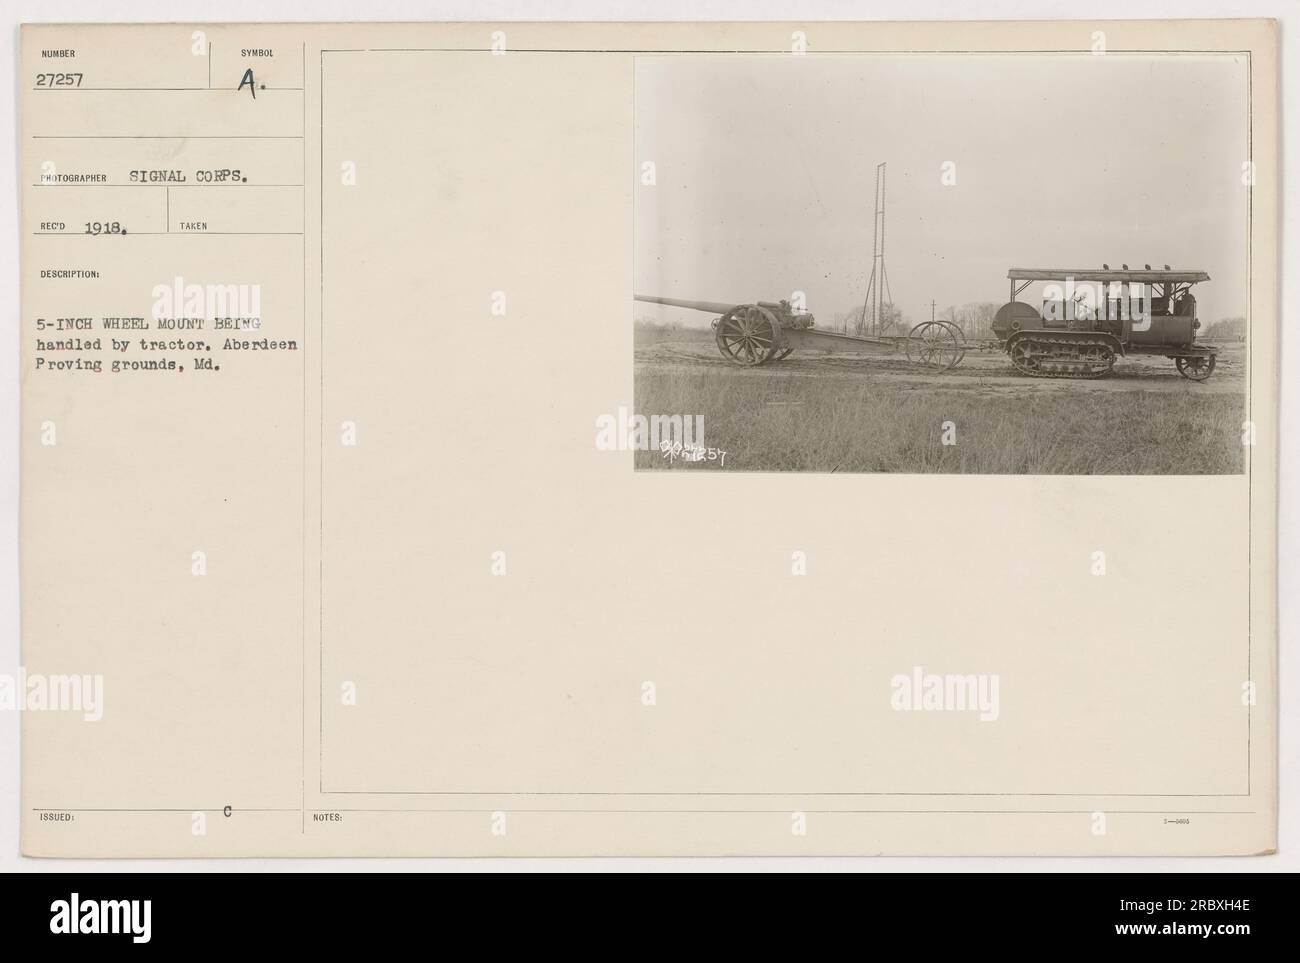 Une artillerie montée sur roues de 5 pouces manipulée par un tracteur à Aberdeen Proving Grounds, Maryland en 1918. Cette photo porte le numéro 27257 et a été prise par le signal corps. La légende mentionne également l'utilisation du symbole A et de la note « PATEST 1 ». Banque D'Images